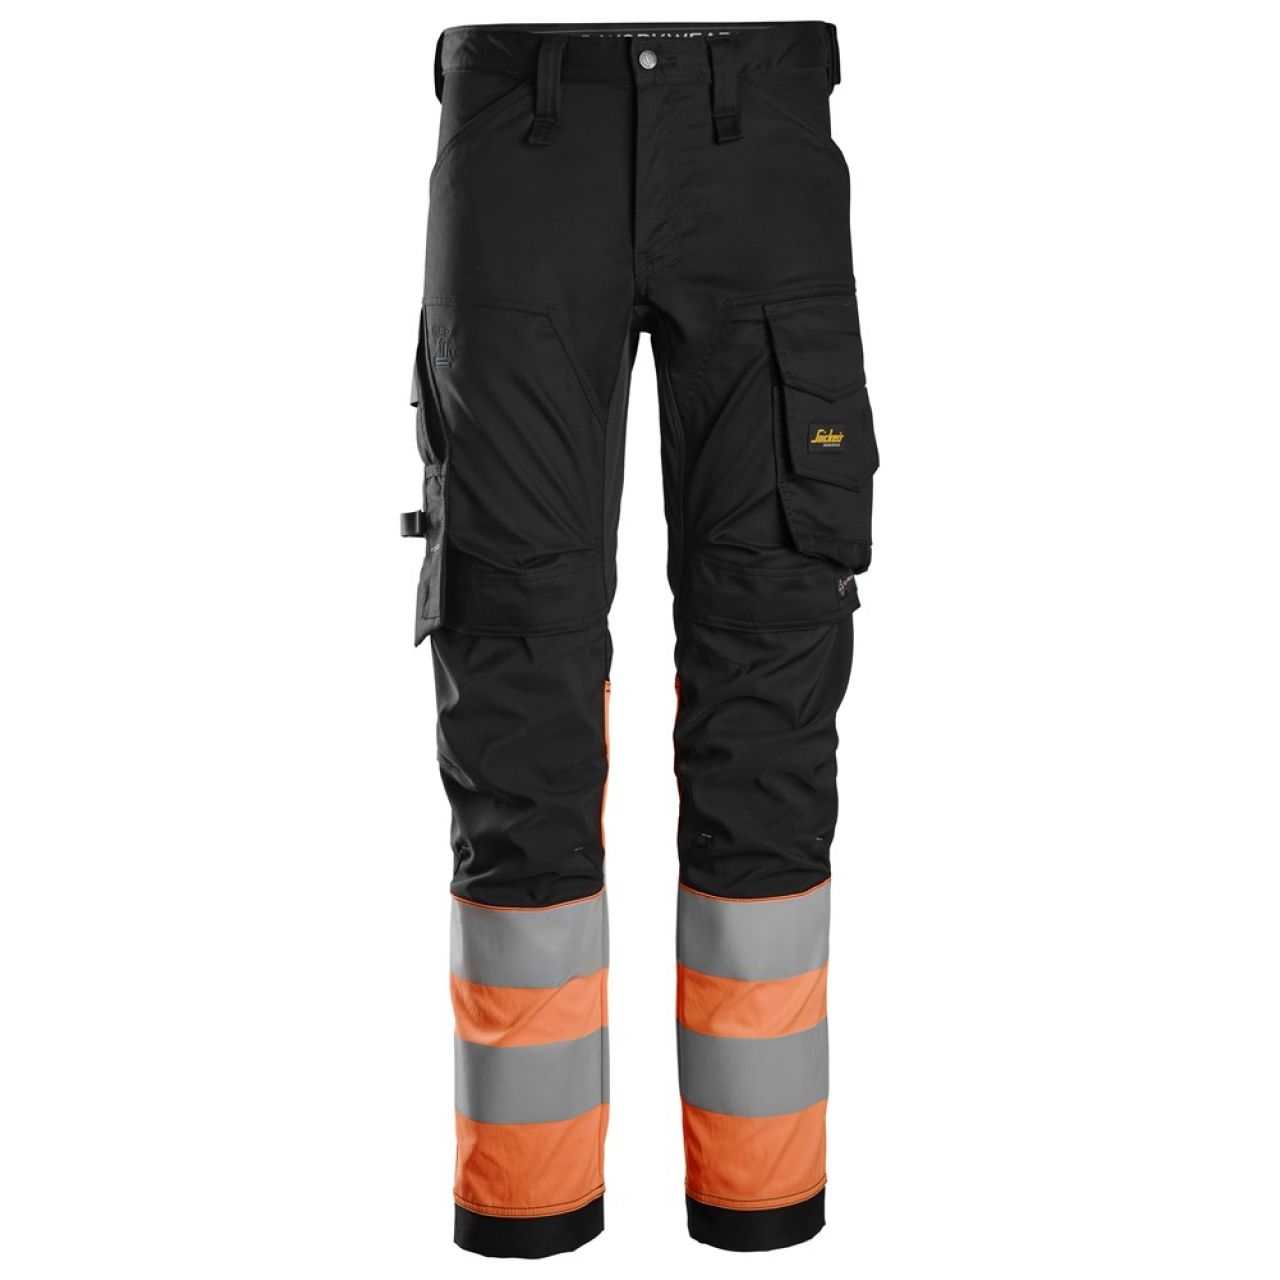 6334 Pantalones largos de trabajo elásticos de alta visibilidad clase 1 negro-naranja talla 48